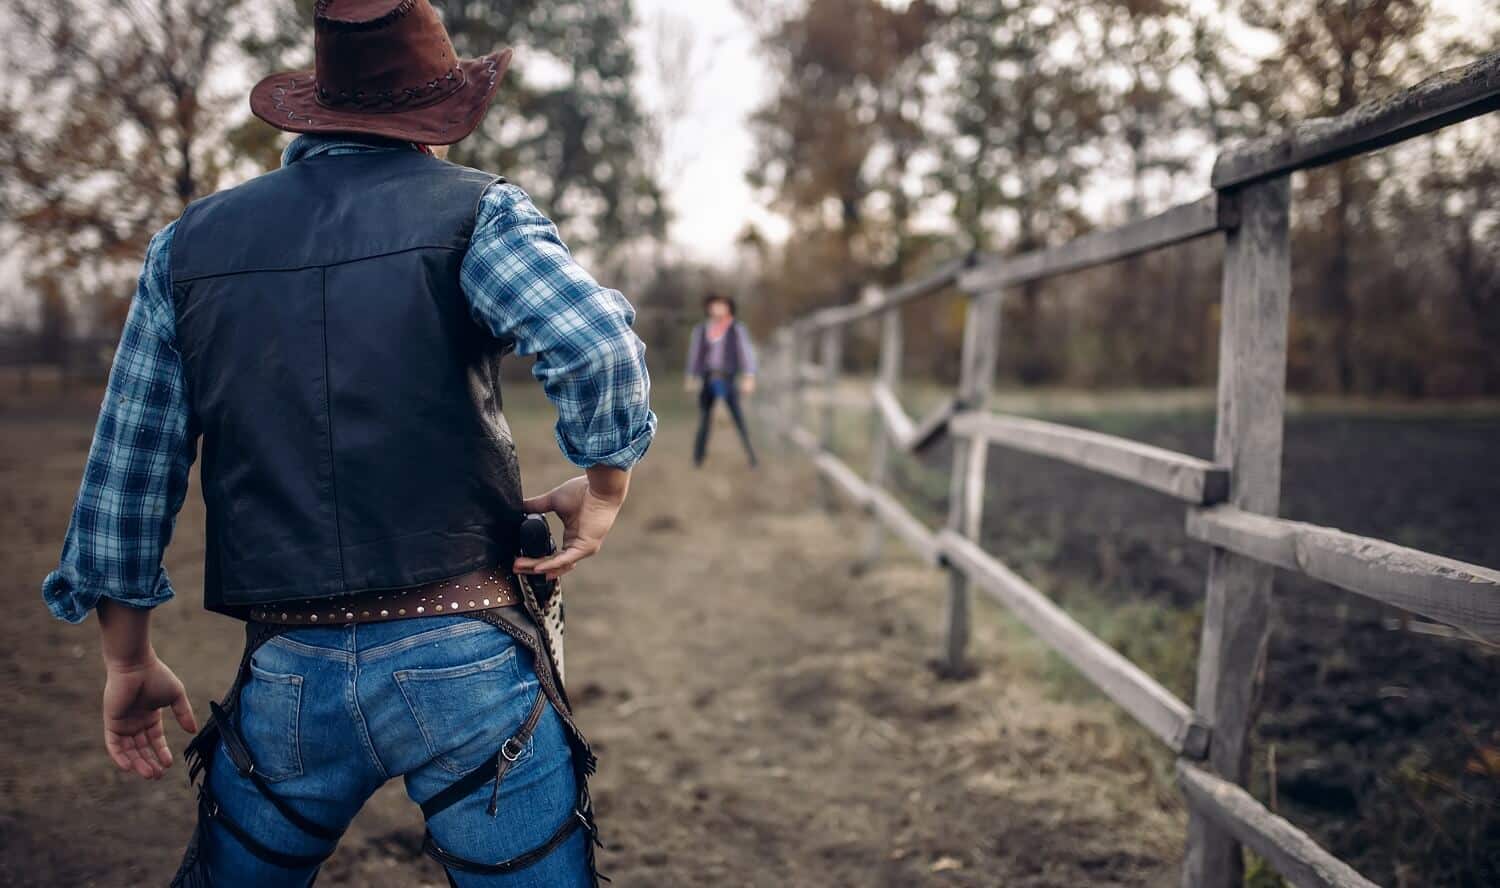 Zwei Cowboys stehen sich in einem Revolver-Duell, das per Schuss-Gegenschuss-Methode filmisch umgesetzt wird, gegenüber.